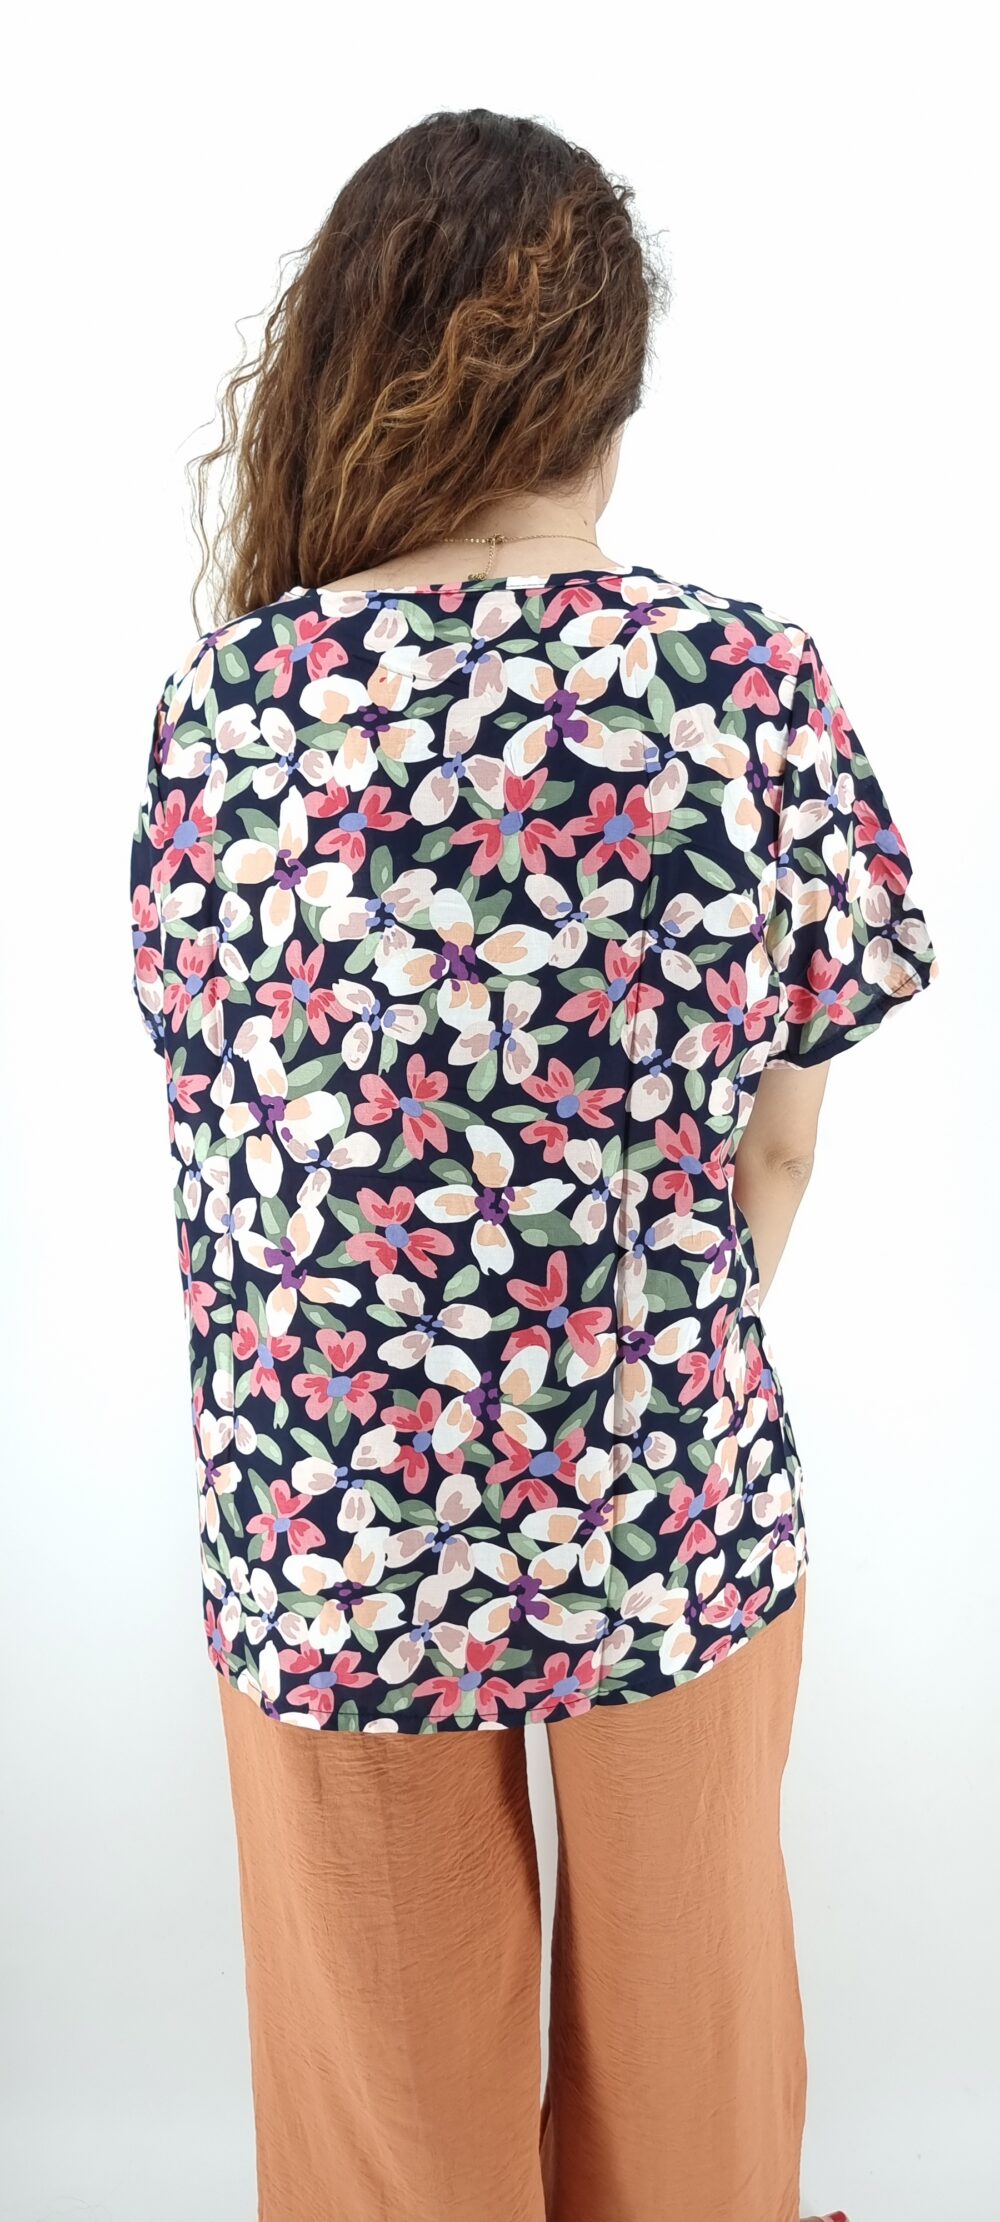 Μπλούζα με μεγάλο φλοράλ μοτίβο σε φαρδιά γραμμή ροζ μαύρο